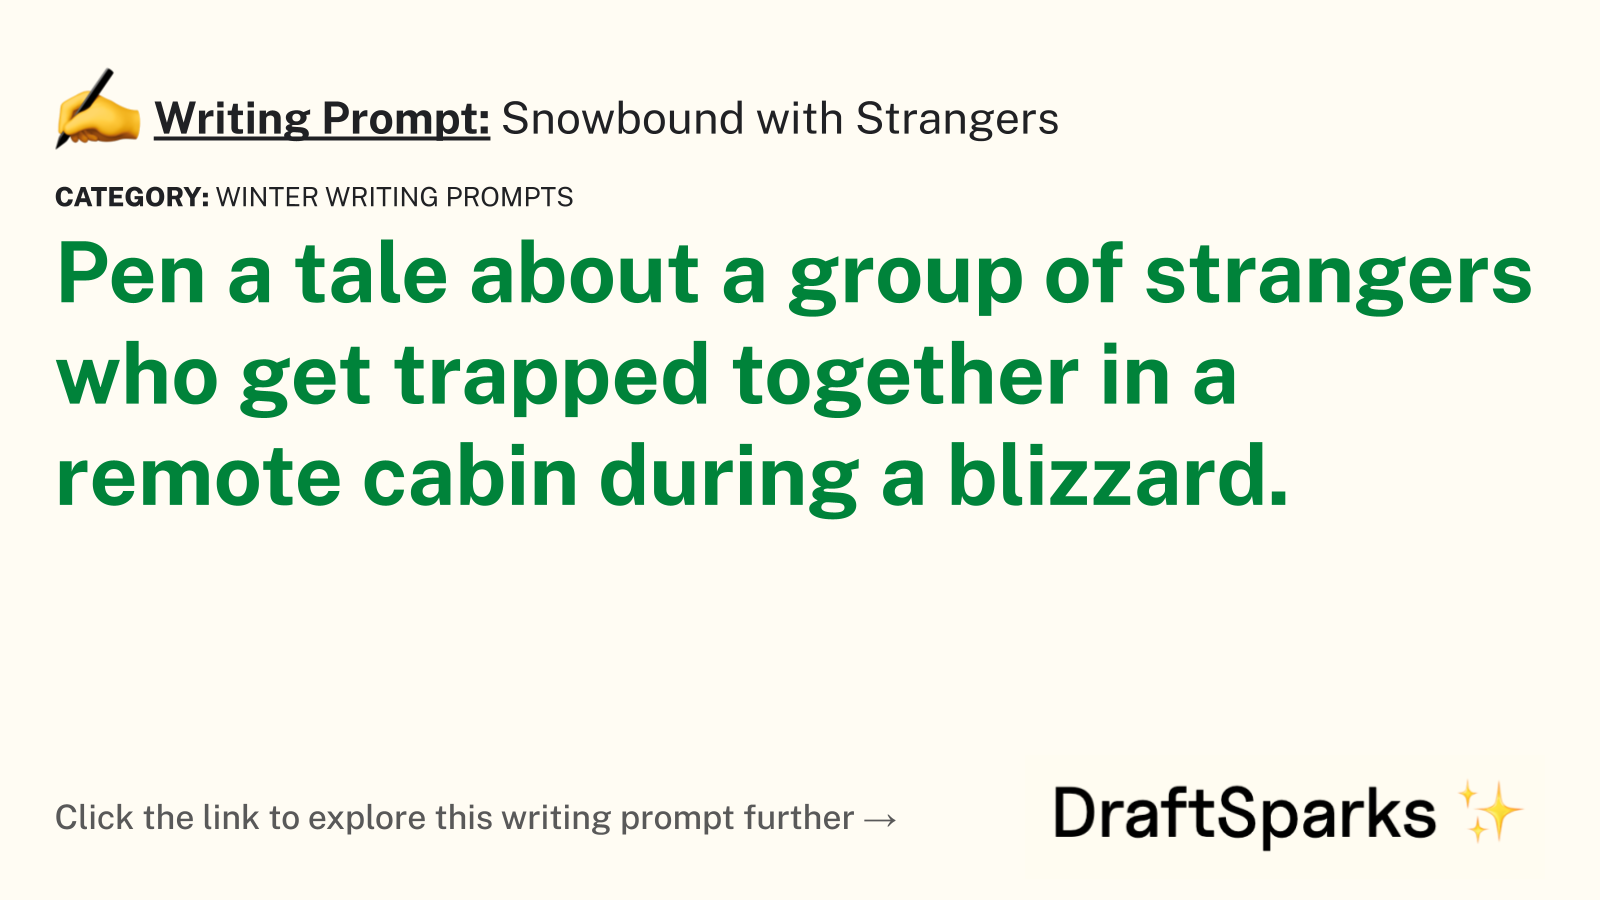 Snowbound with Strangers